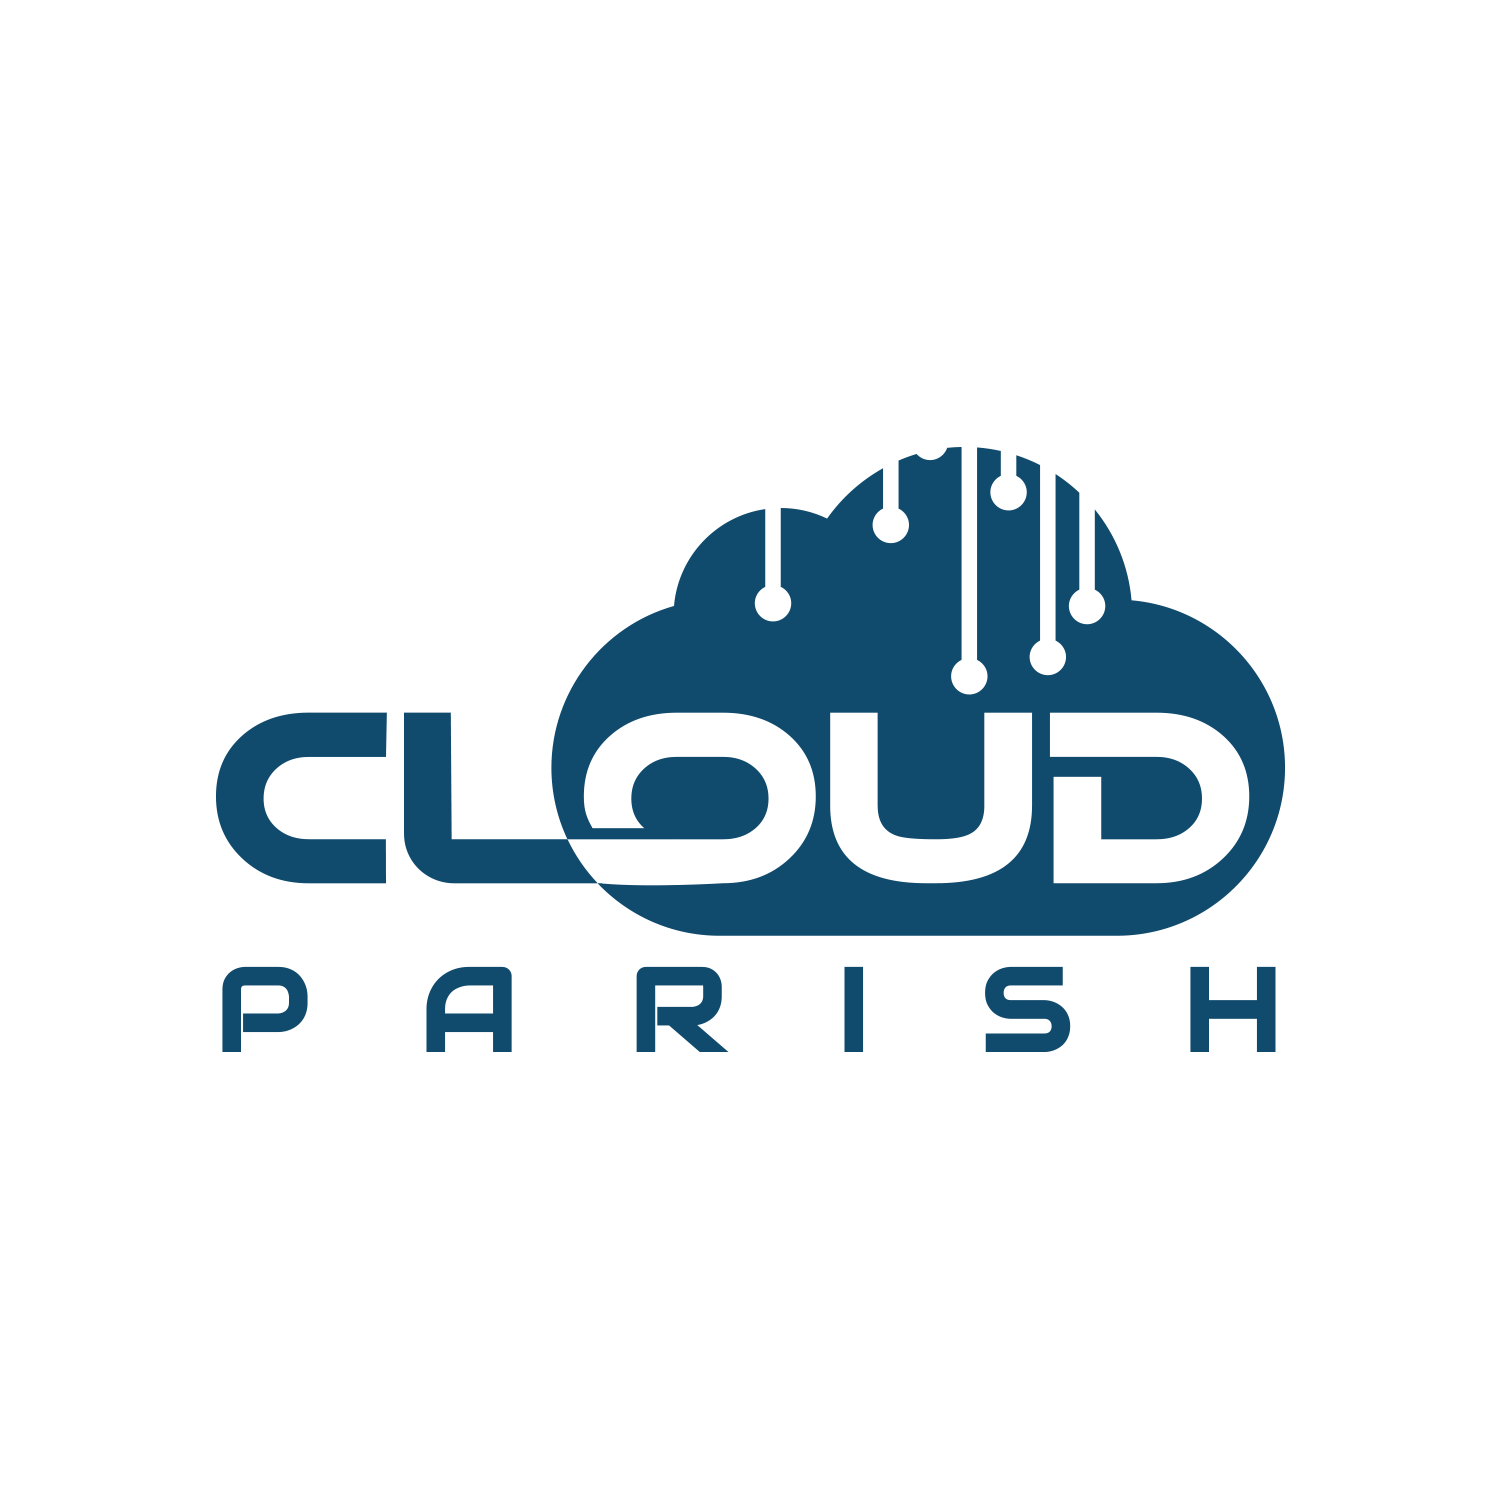 Cloud Parish